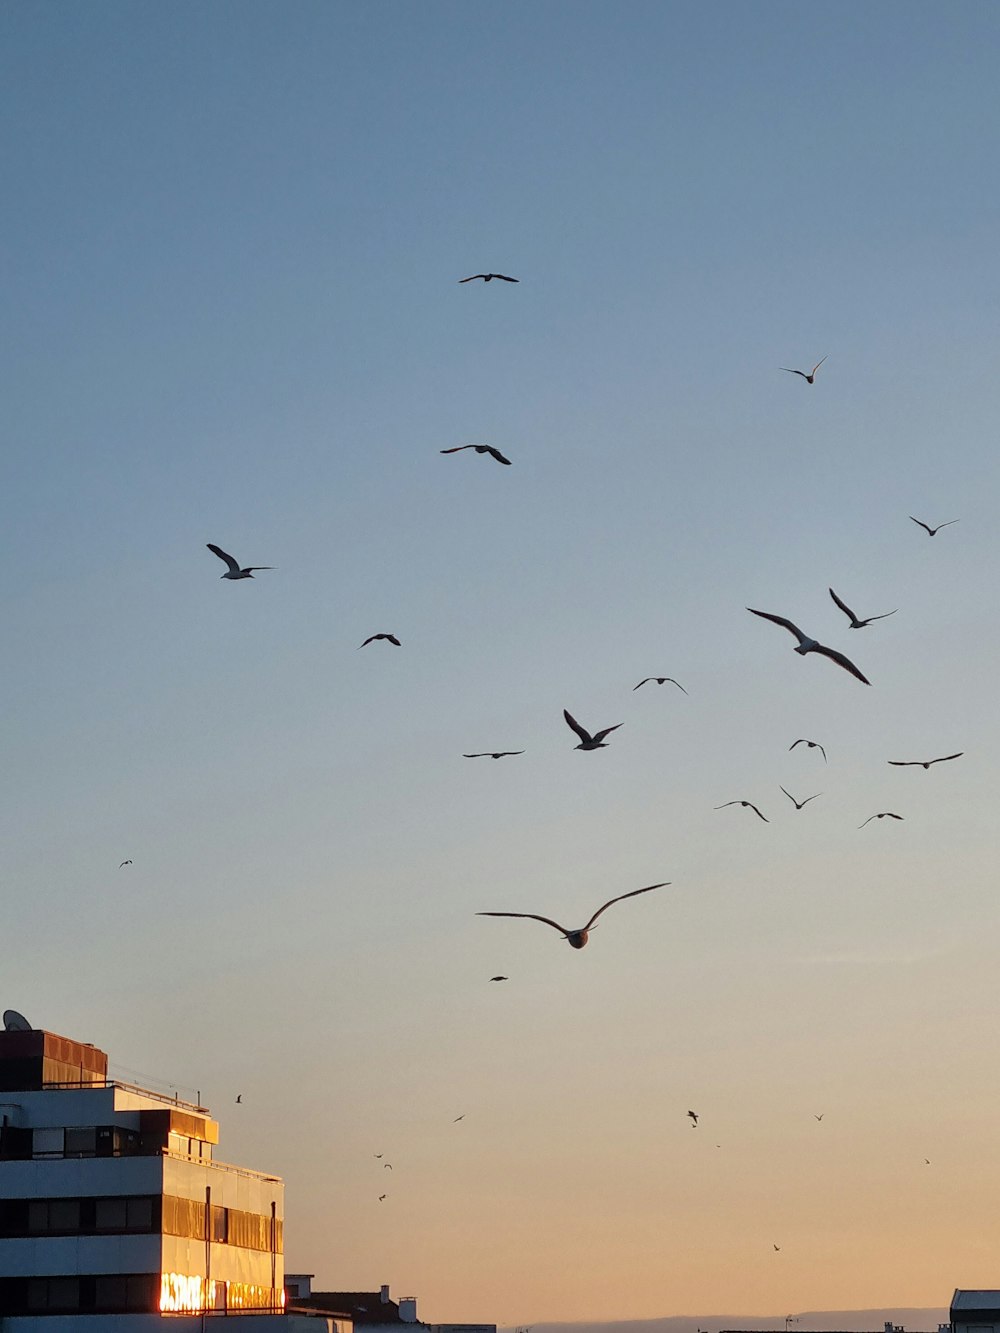 Uno stormo di uccelli che volano sopra una città